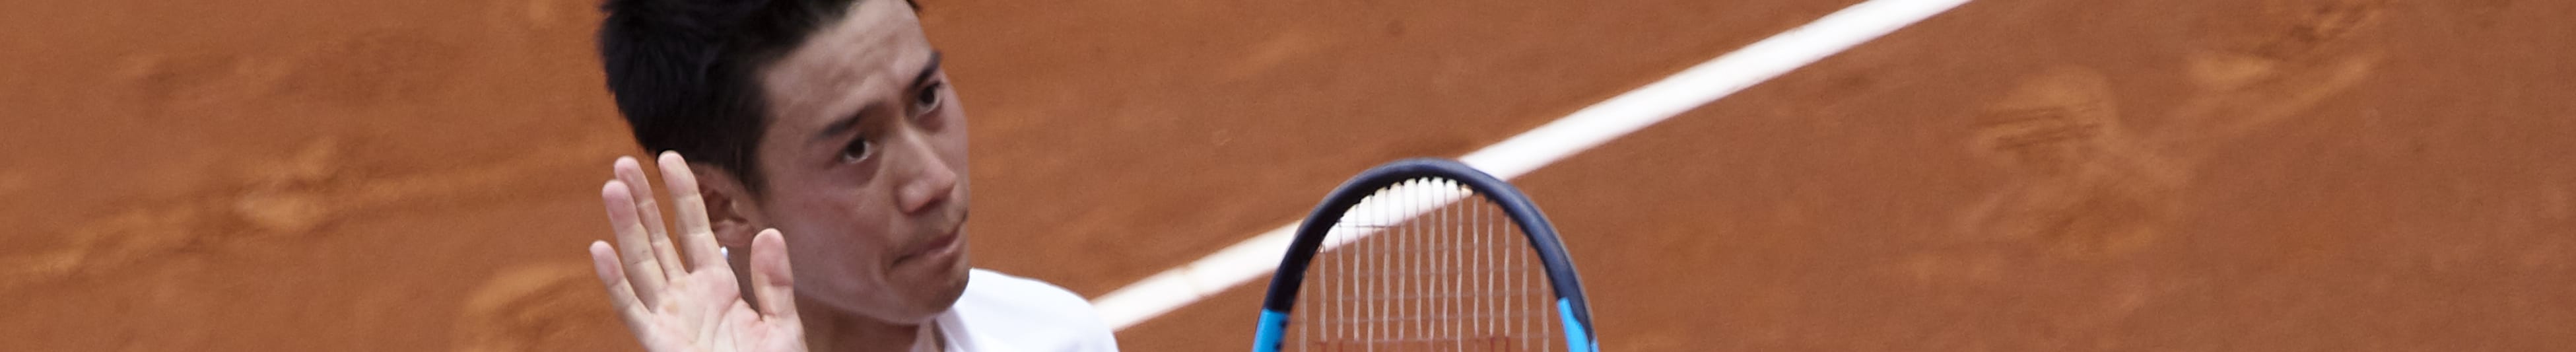 ATP Barcellona: Nishikori può domare Medvedev e riguadagnare la finale dopo 4 anni